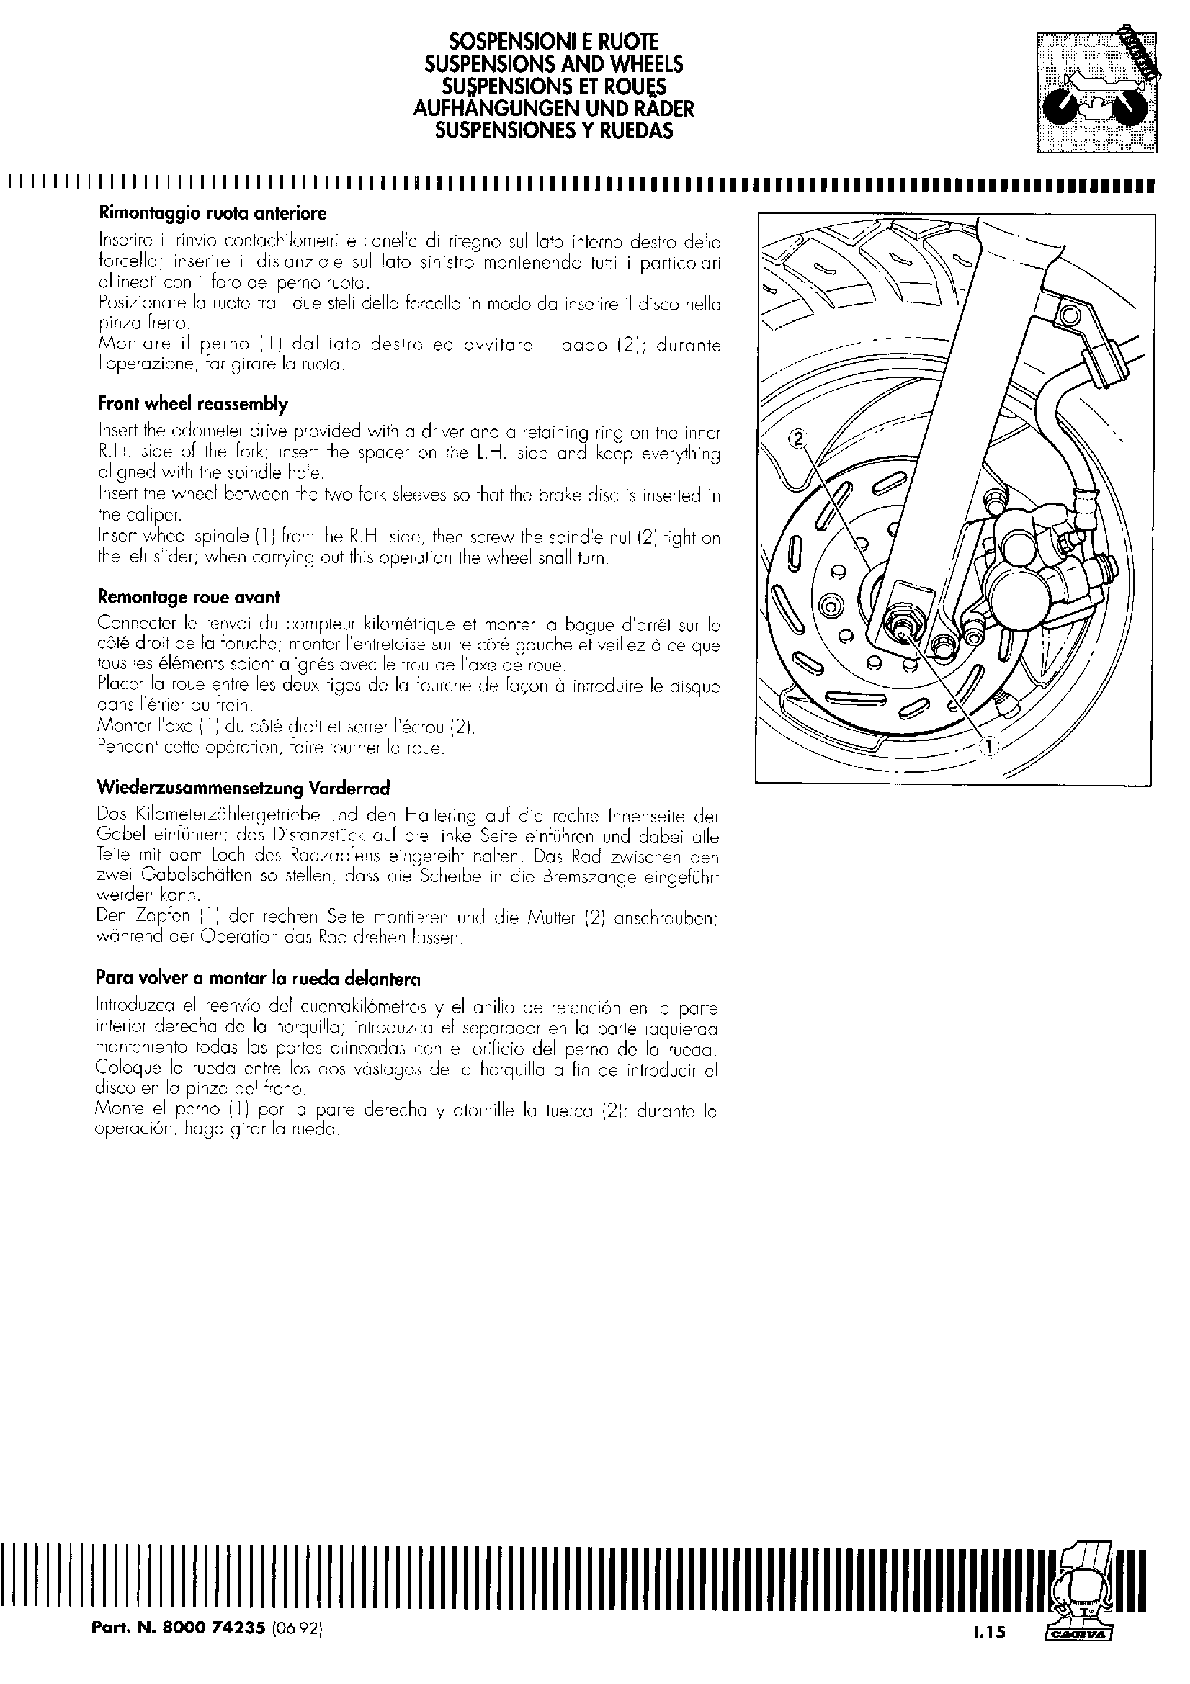 Manual de servicio para scooter Cagiva City 50 cc 1992-1999